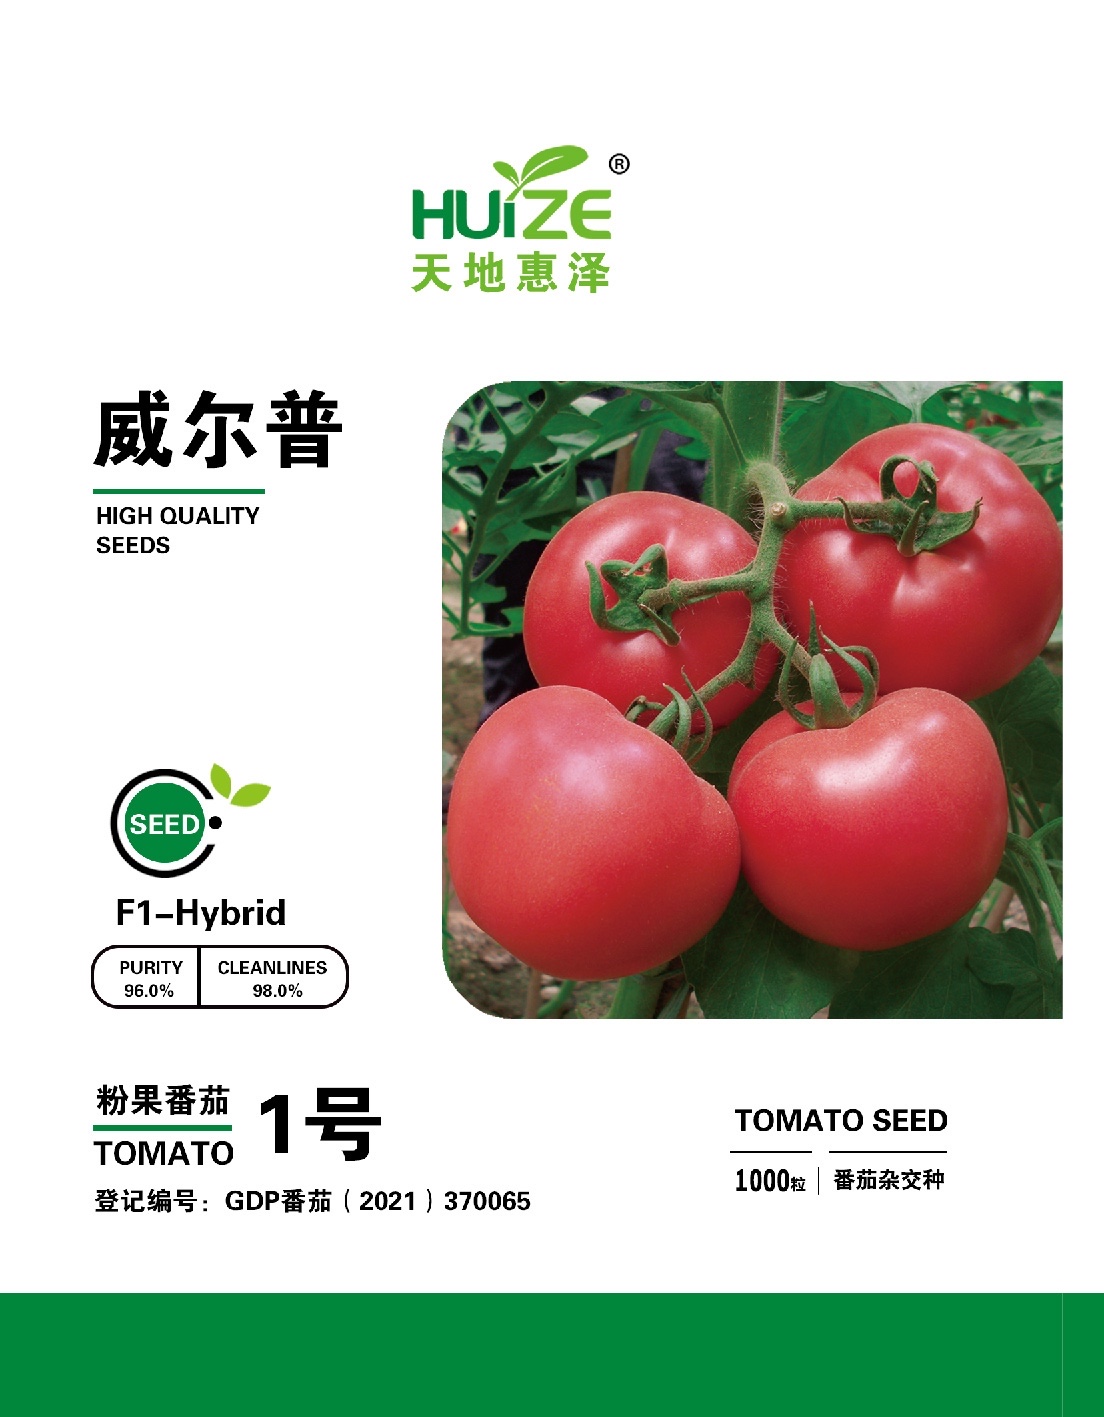 山东青岛威尔普1号番茄种子批发公司销售价格 威尔普1号种子